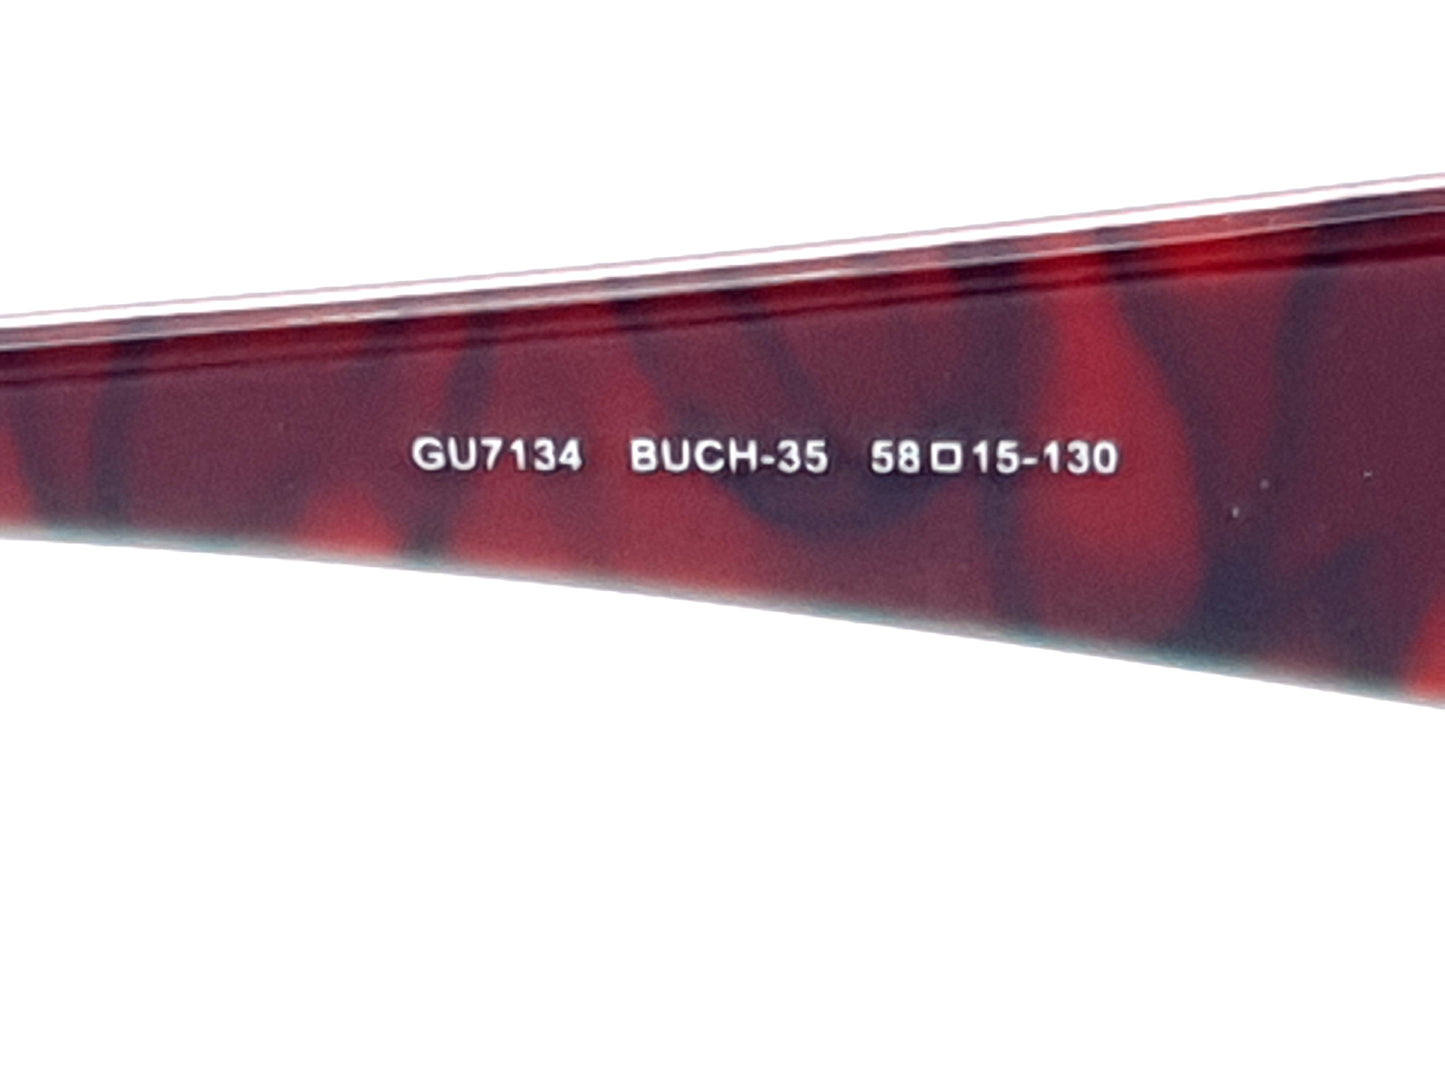 GUESS GU7134 BUCH-35